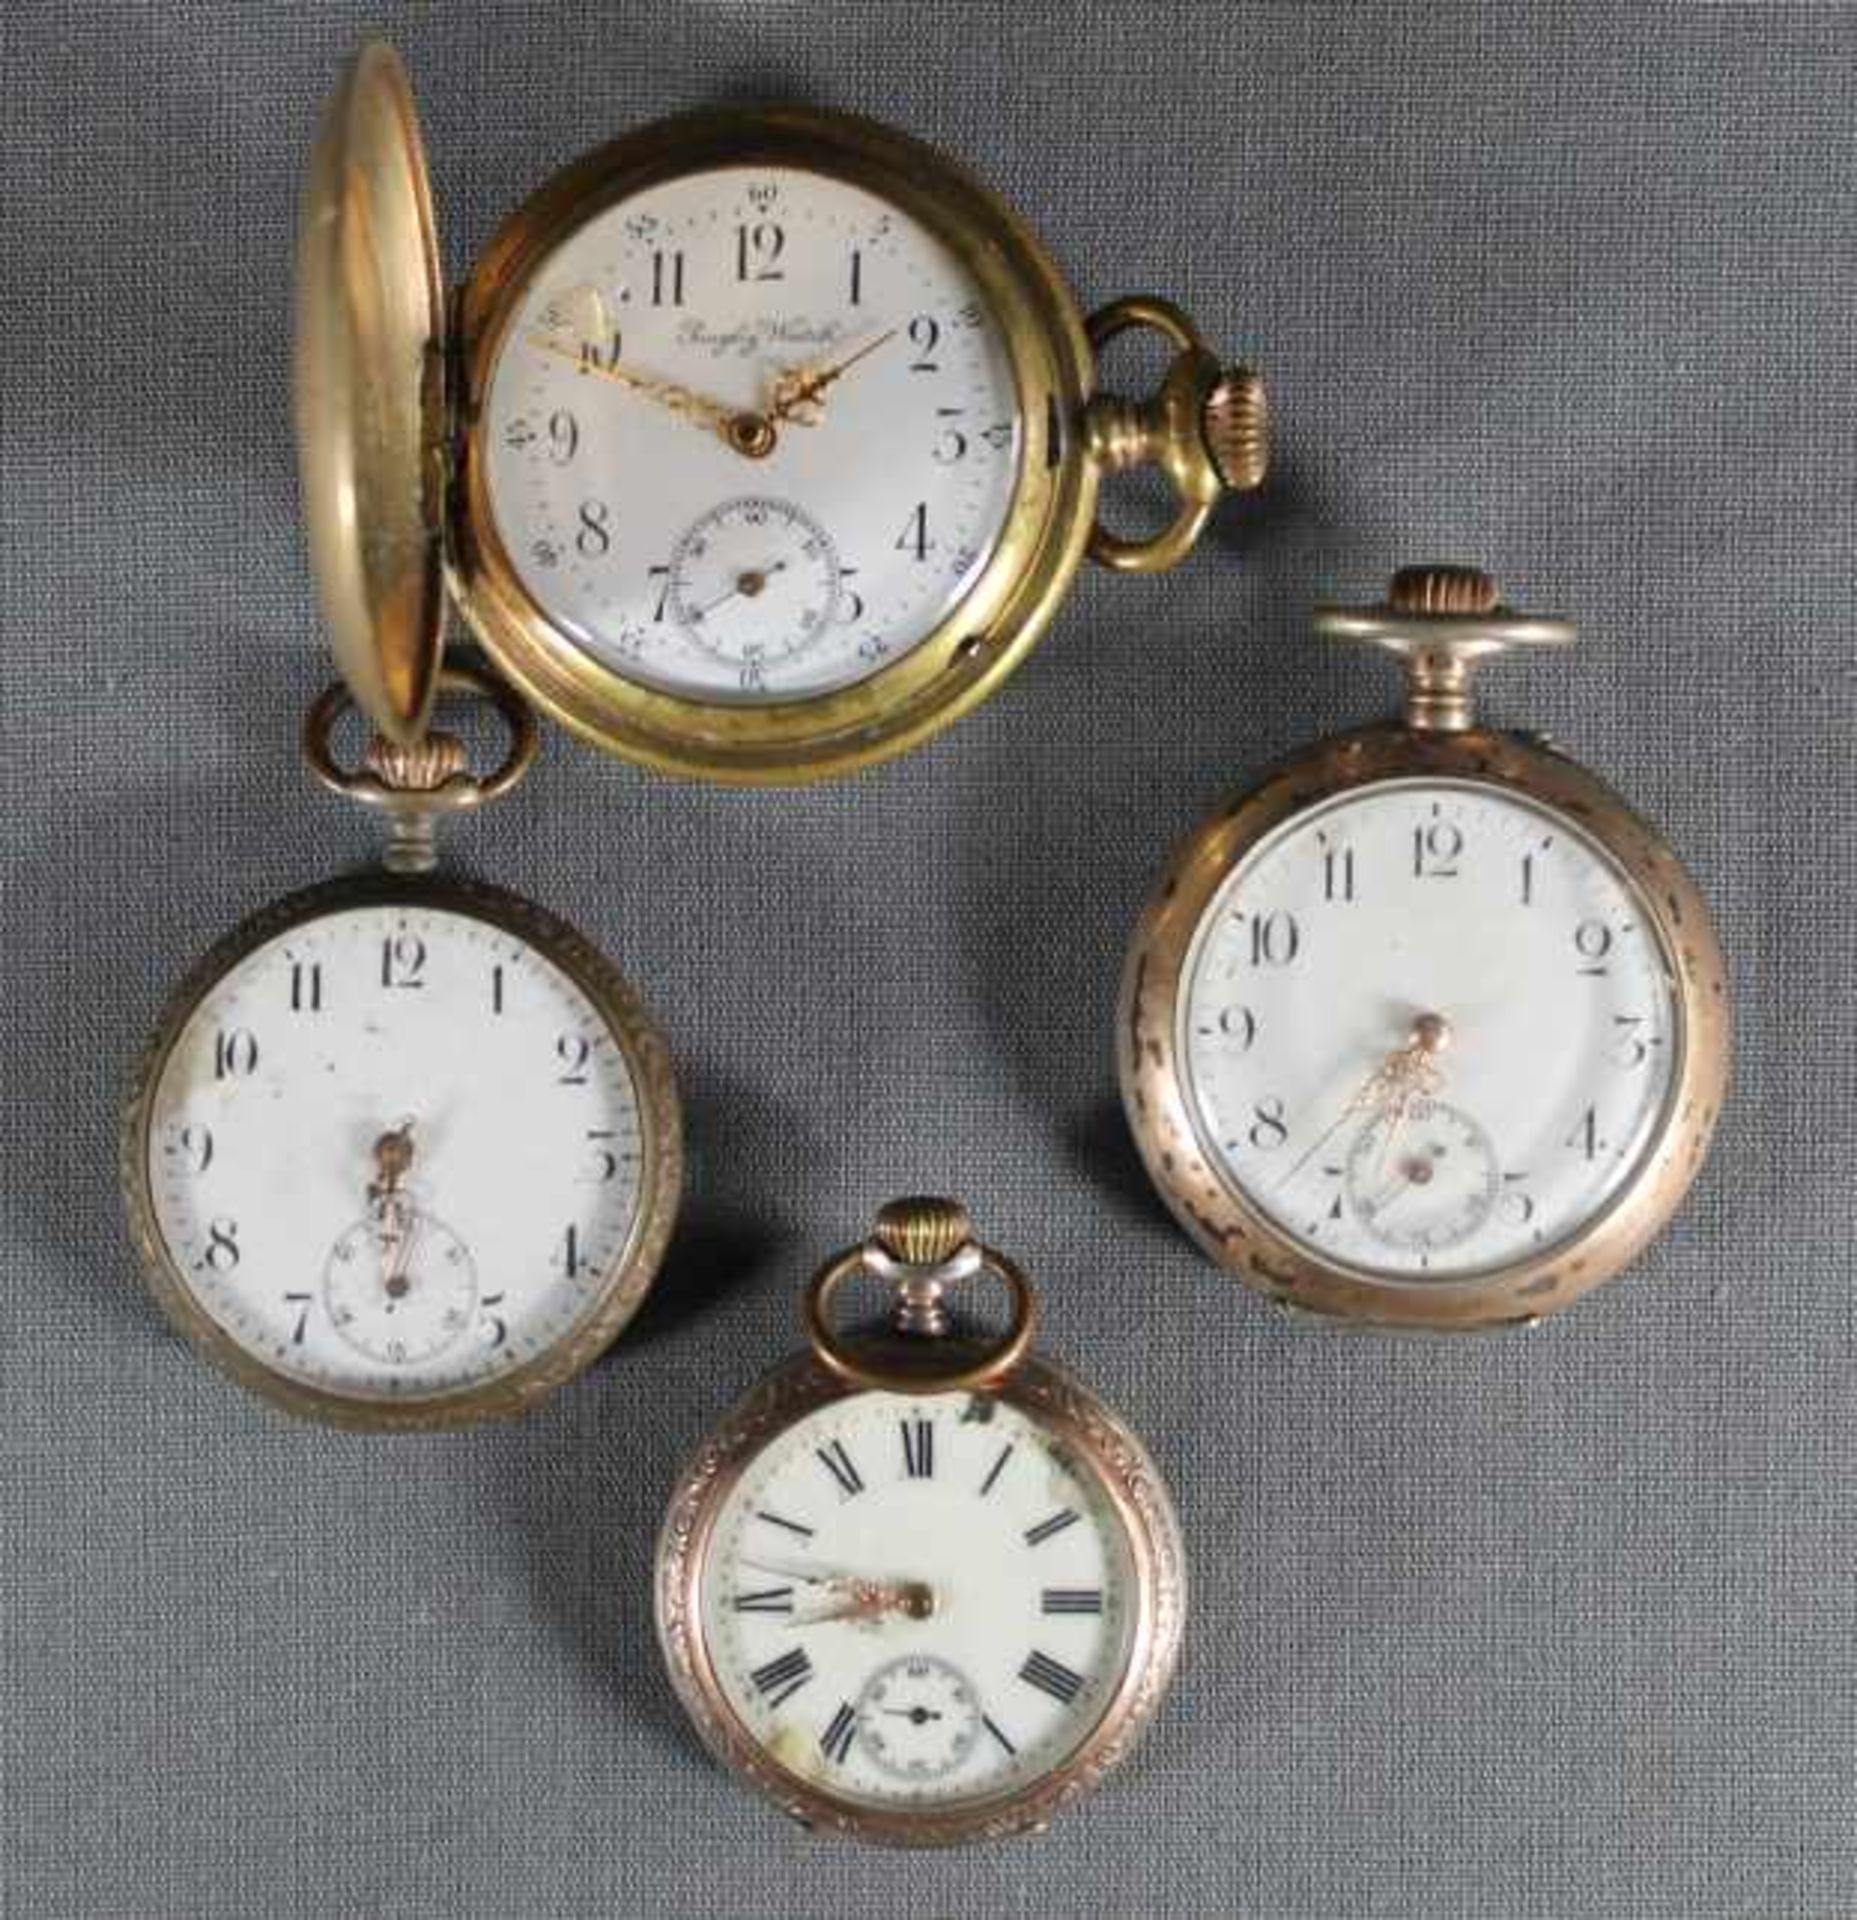 4 Taschenuhren Silber etc., punziert, verzierte Gehäuse, u.a. Rugby Watch, alle Uhren beschädigt,